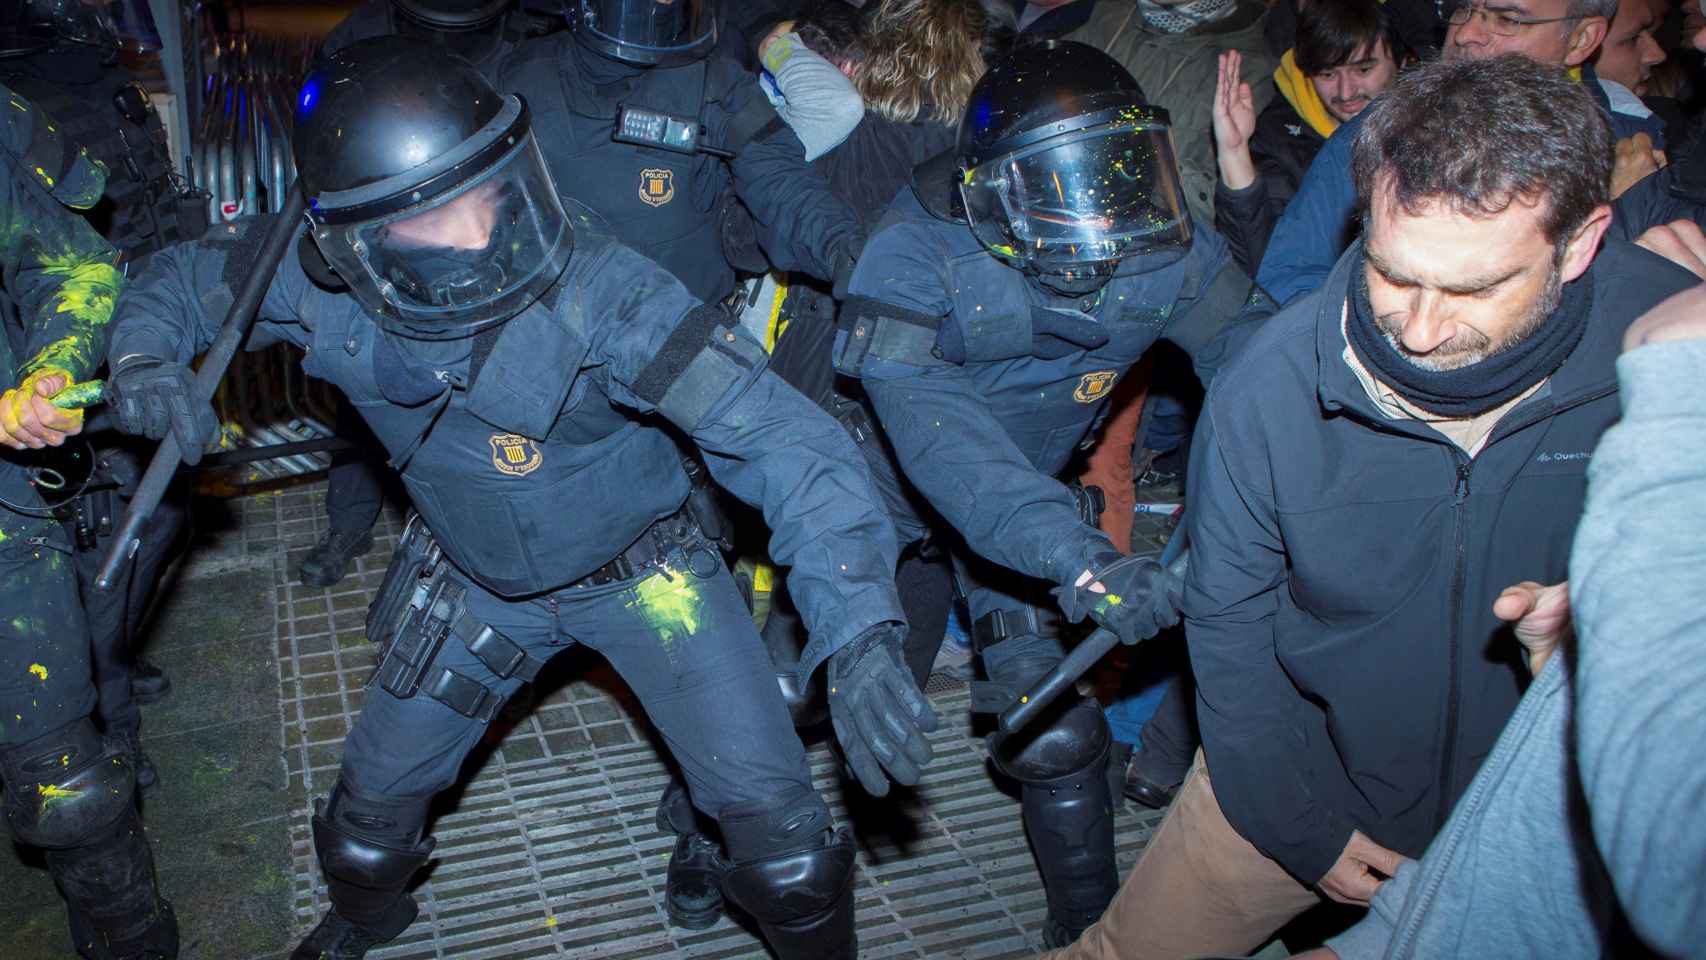 Agentes de los Mossos d'Esquadra cargan contra algunos manifestantes cerca de la Delegación del Gobierno en Barcelona en uno de los momentos de tensión de las protestas / EFE